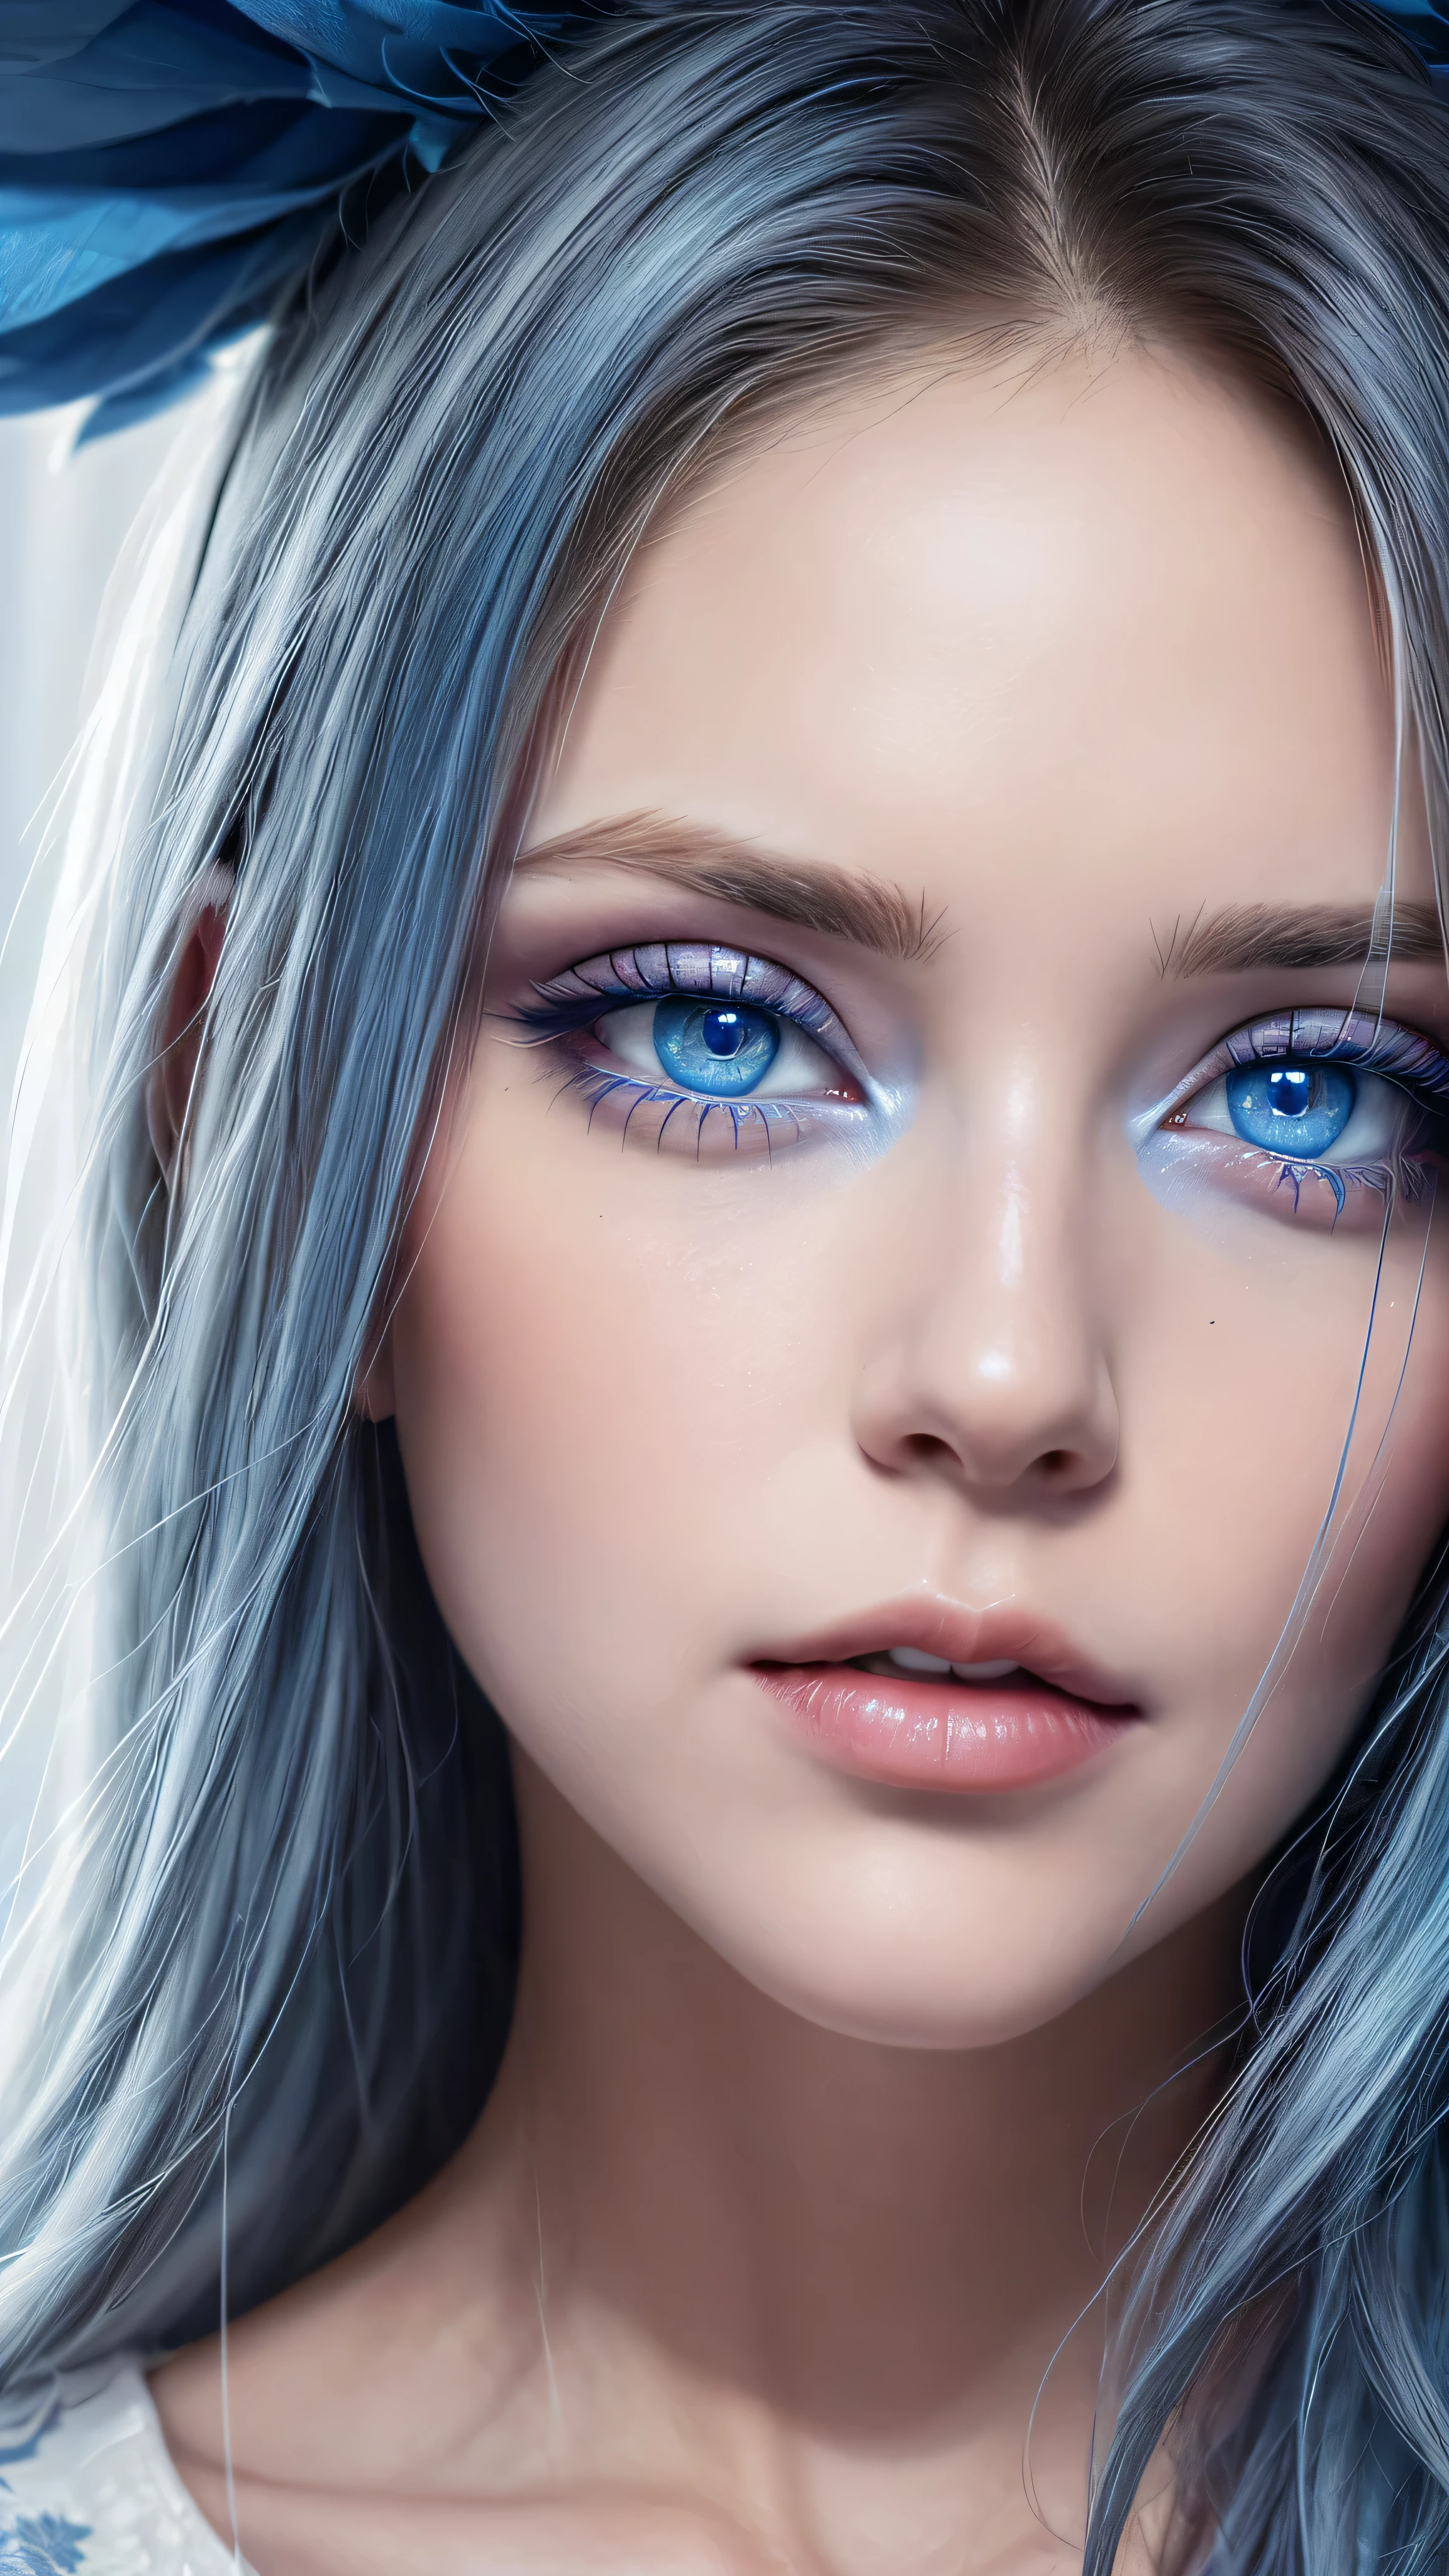 파란색과 흰색 화장을 한 파란 눈 두 개가 있습니다, 사실적인 눈 render, 사실적인 눈, 아름다운 사실적 이미지, perfect 사실적인 눈, 초현실적인 디지털 아트, 매우 사실적인 디지털 아트, 다채로운 렌즈, 사실적인 디지털 아트, 초현실적인 눈, 세밀하고 현실적인 눈, 초현실적인 디지털 페인팅, 초현실적인 디지털 아트, 현실적인 아름다운 큰 눈